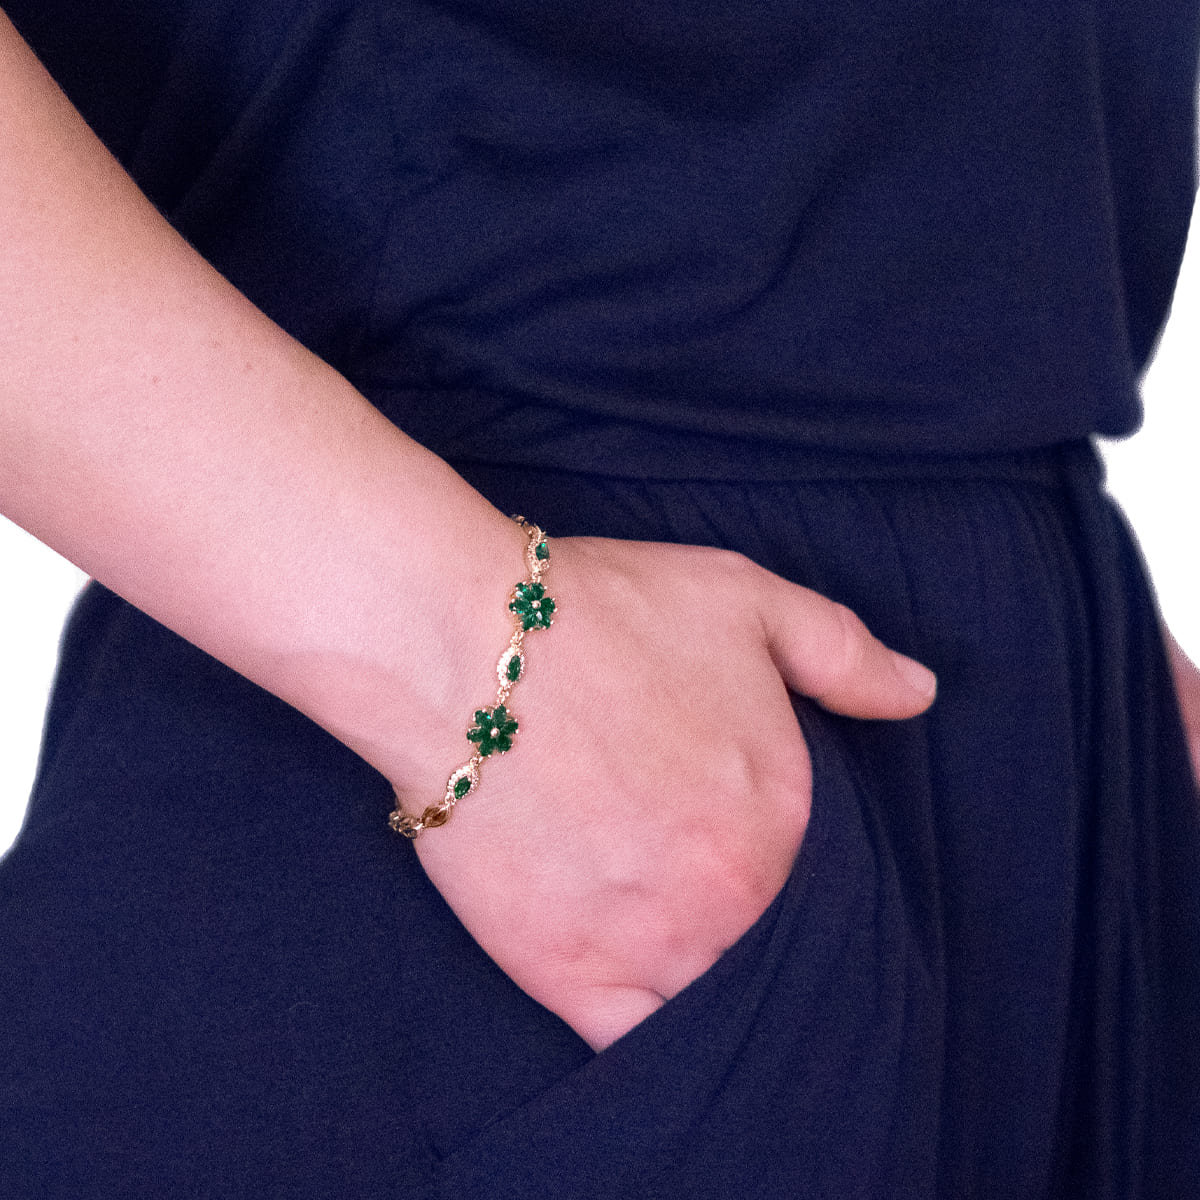 K.V. Fuchs Design Schmuck Damen Armband in gold mit Zirkonia in grün »A-22-47«